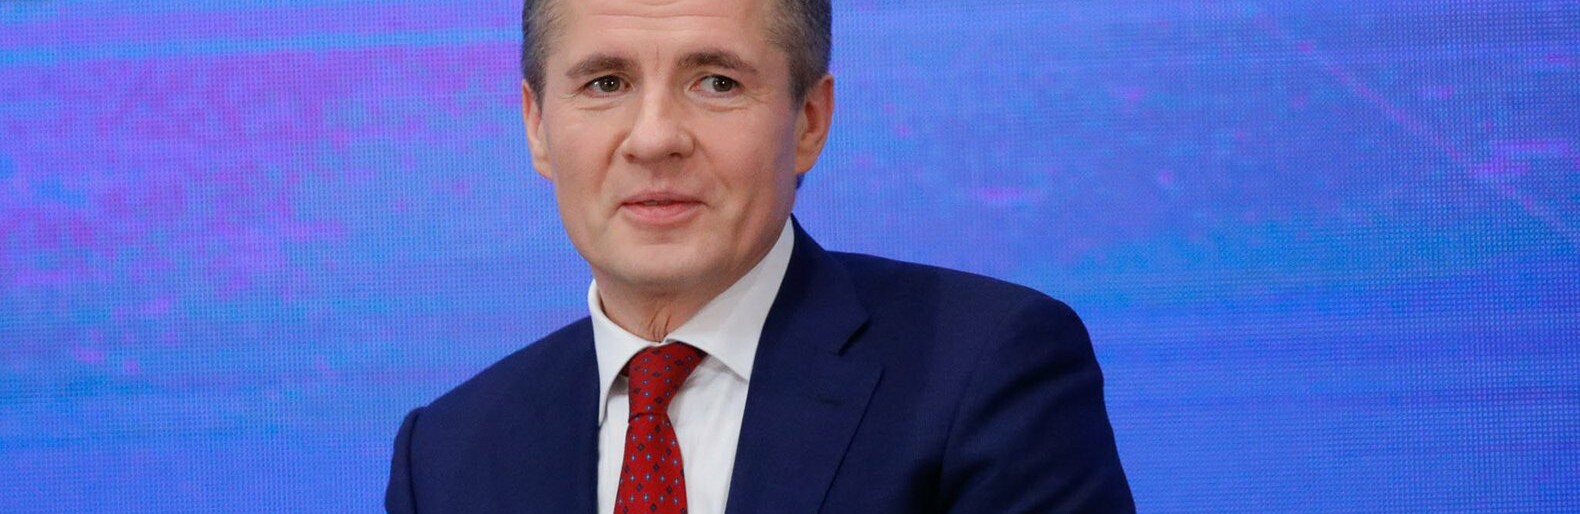 За прошлый год губернатор Белгородской области Гладков заработал 3,5 млн рублей 